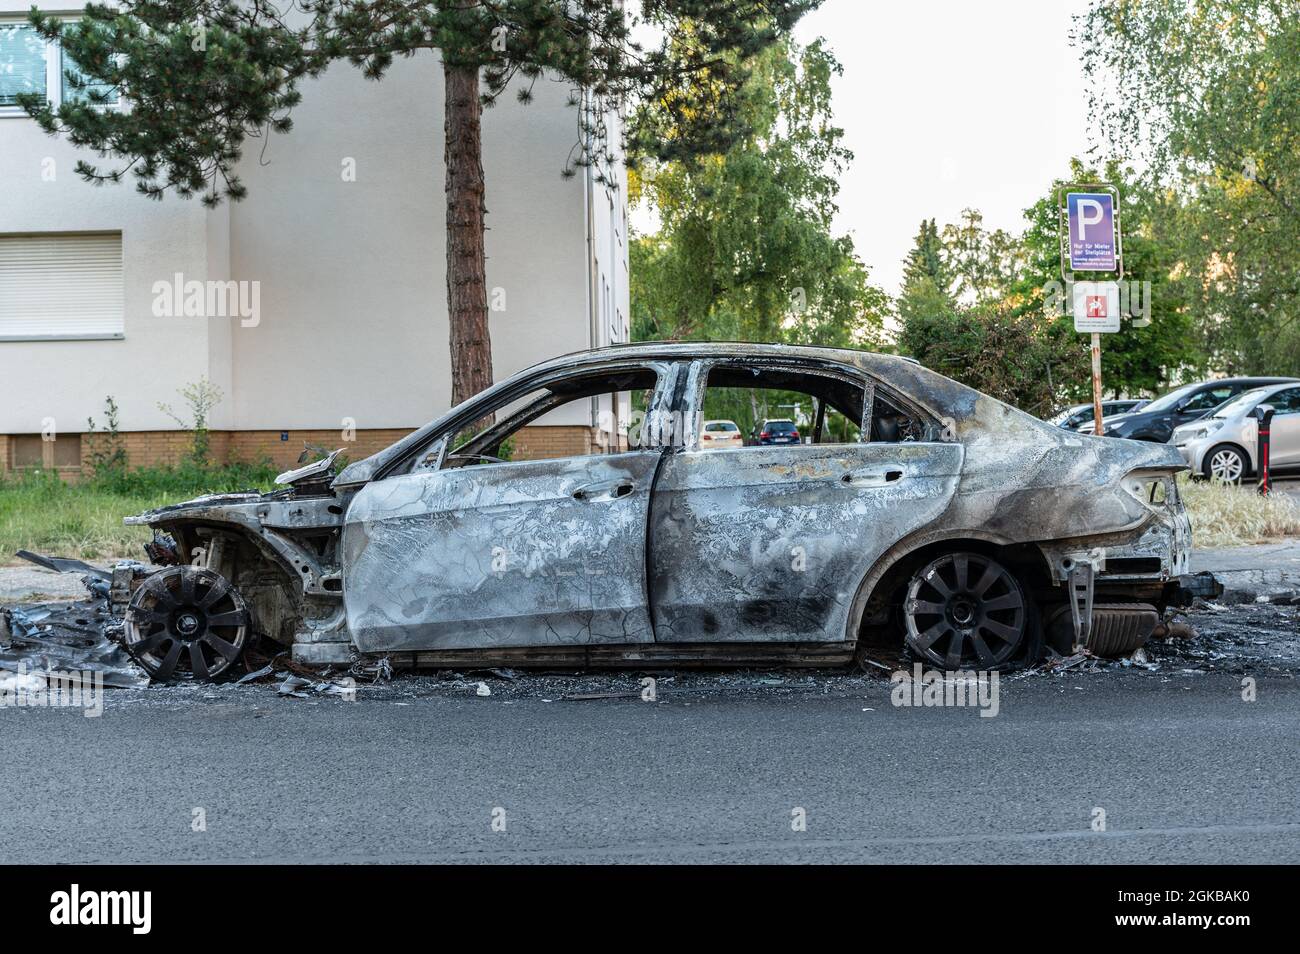 Mercedes è bruciata nella zona residenziale vicino alla strada. Vista laterale del lato conducente Foto Stock